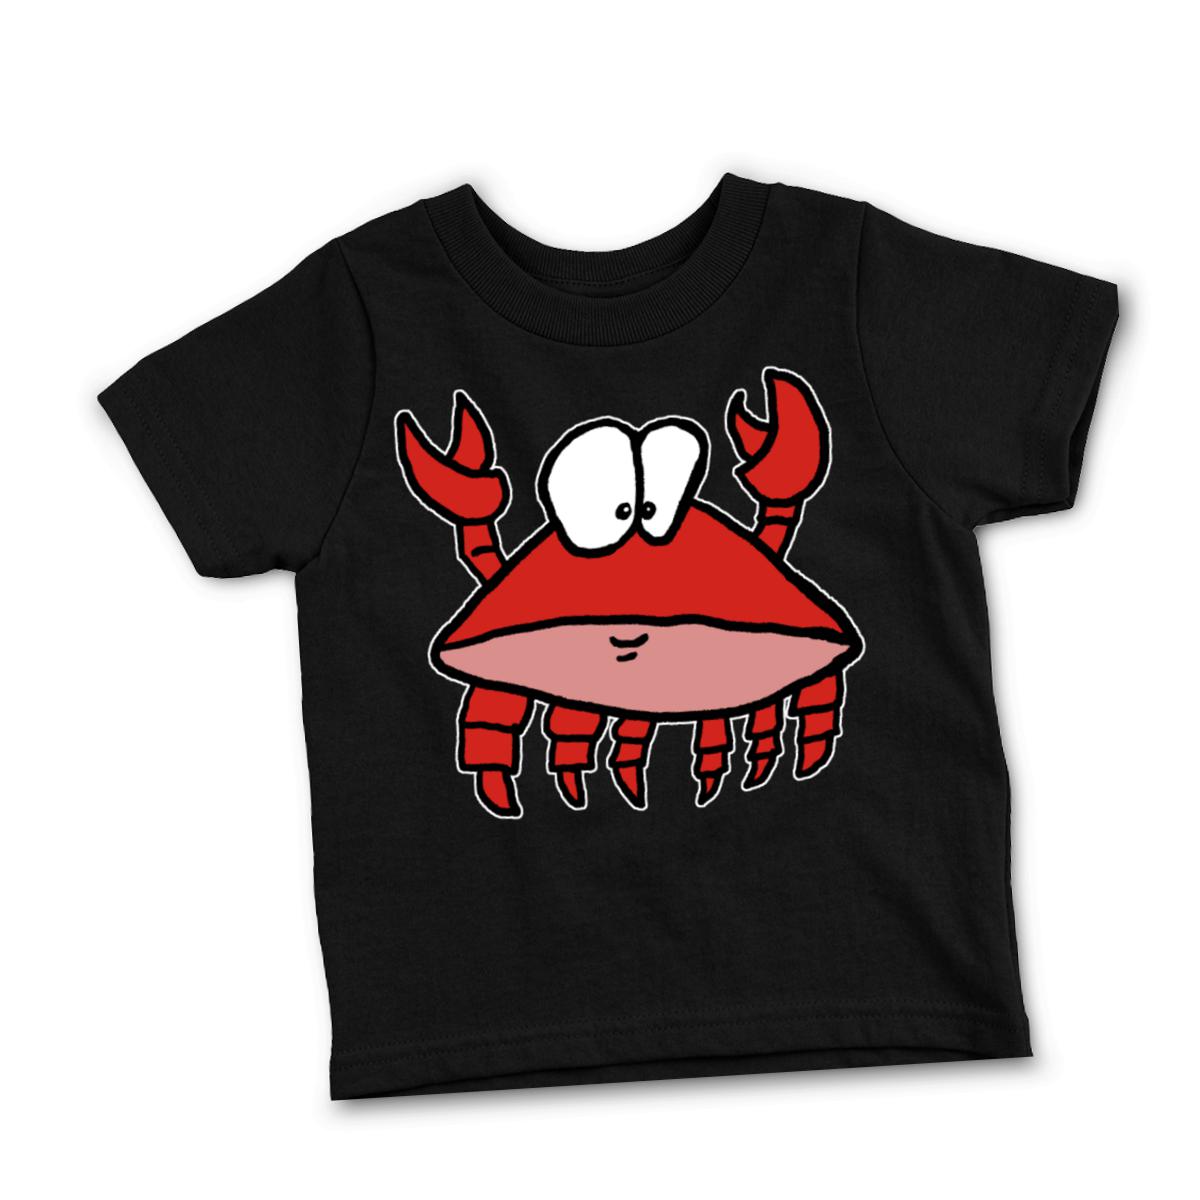 Crab 2.0 Toddler Tee 4T black